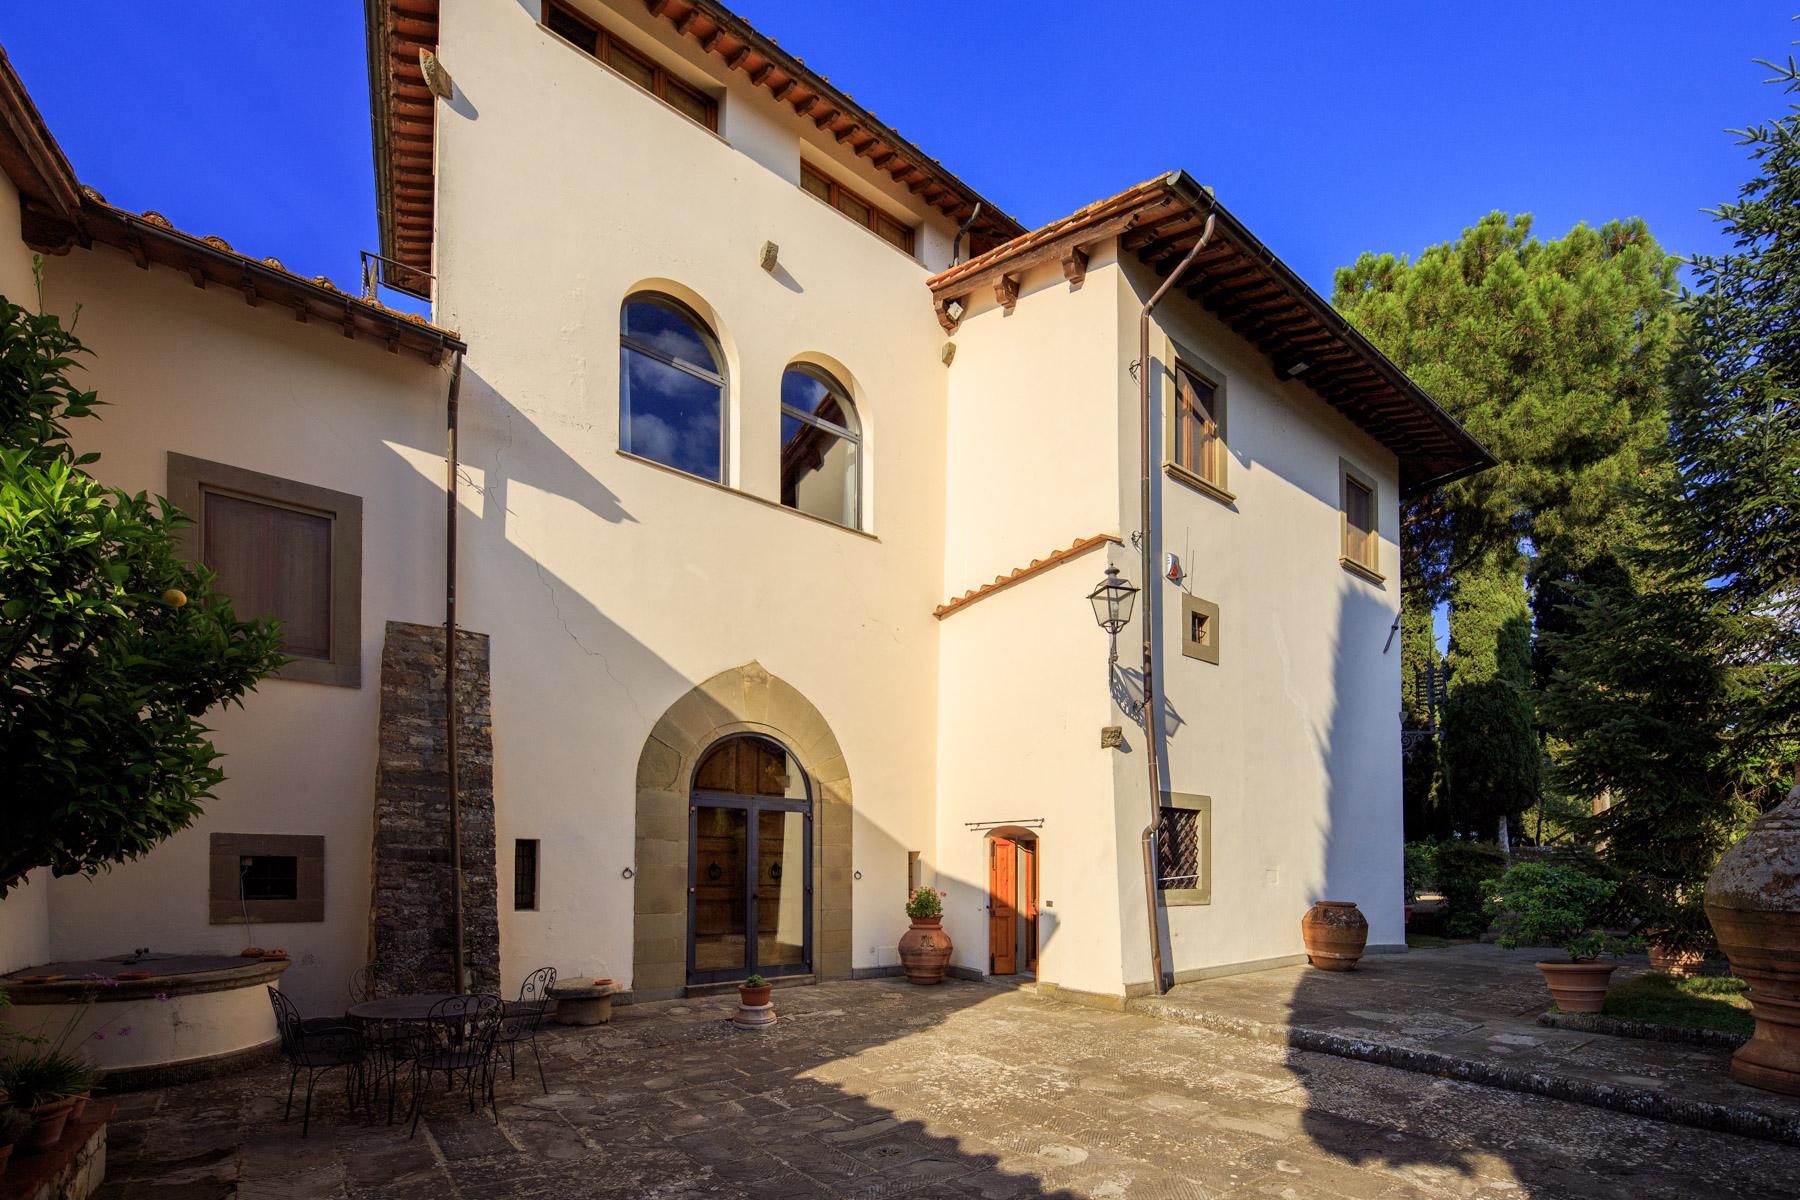 Maestosa Villa Rinascimentale sulle Colline Fiorentine con Cantina e Vigneto - 7